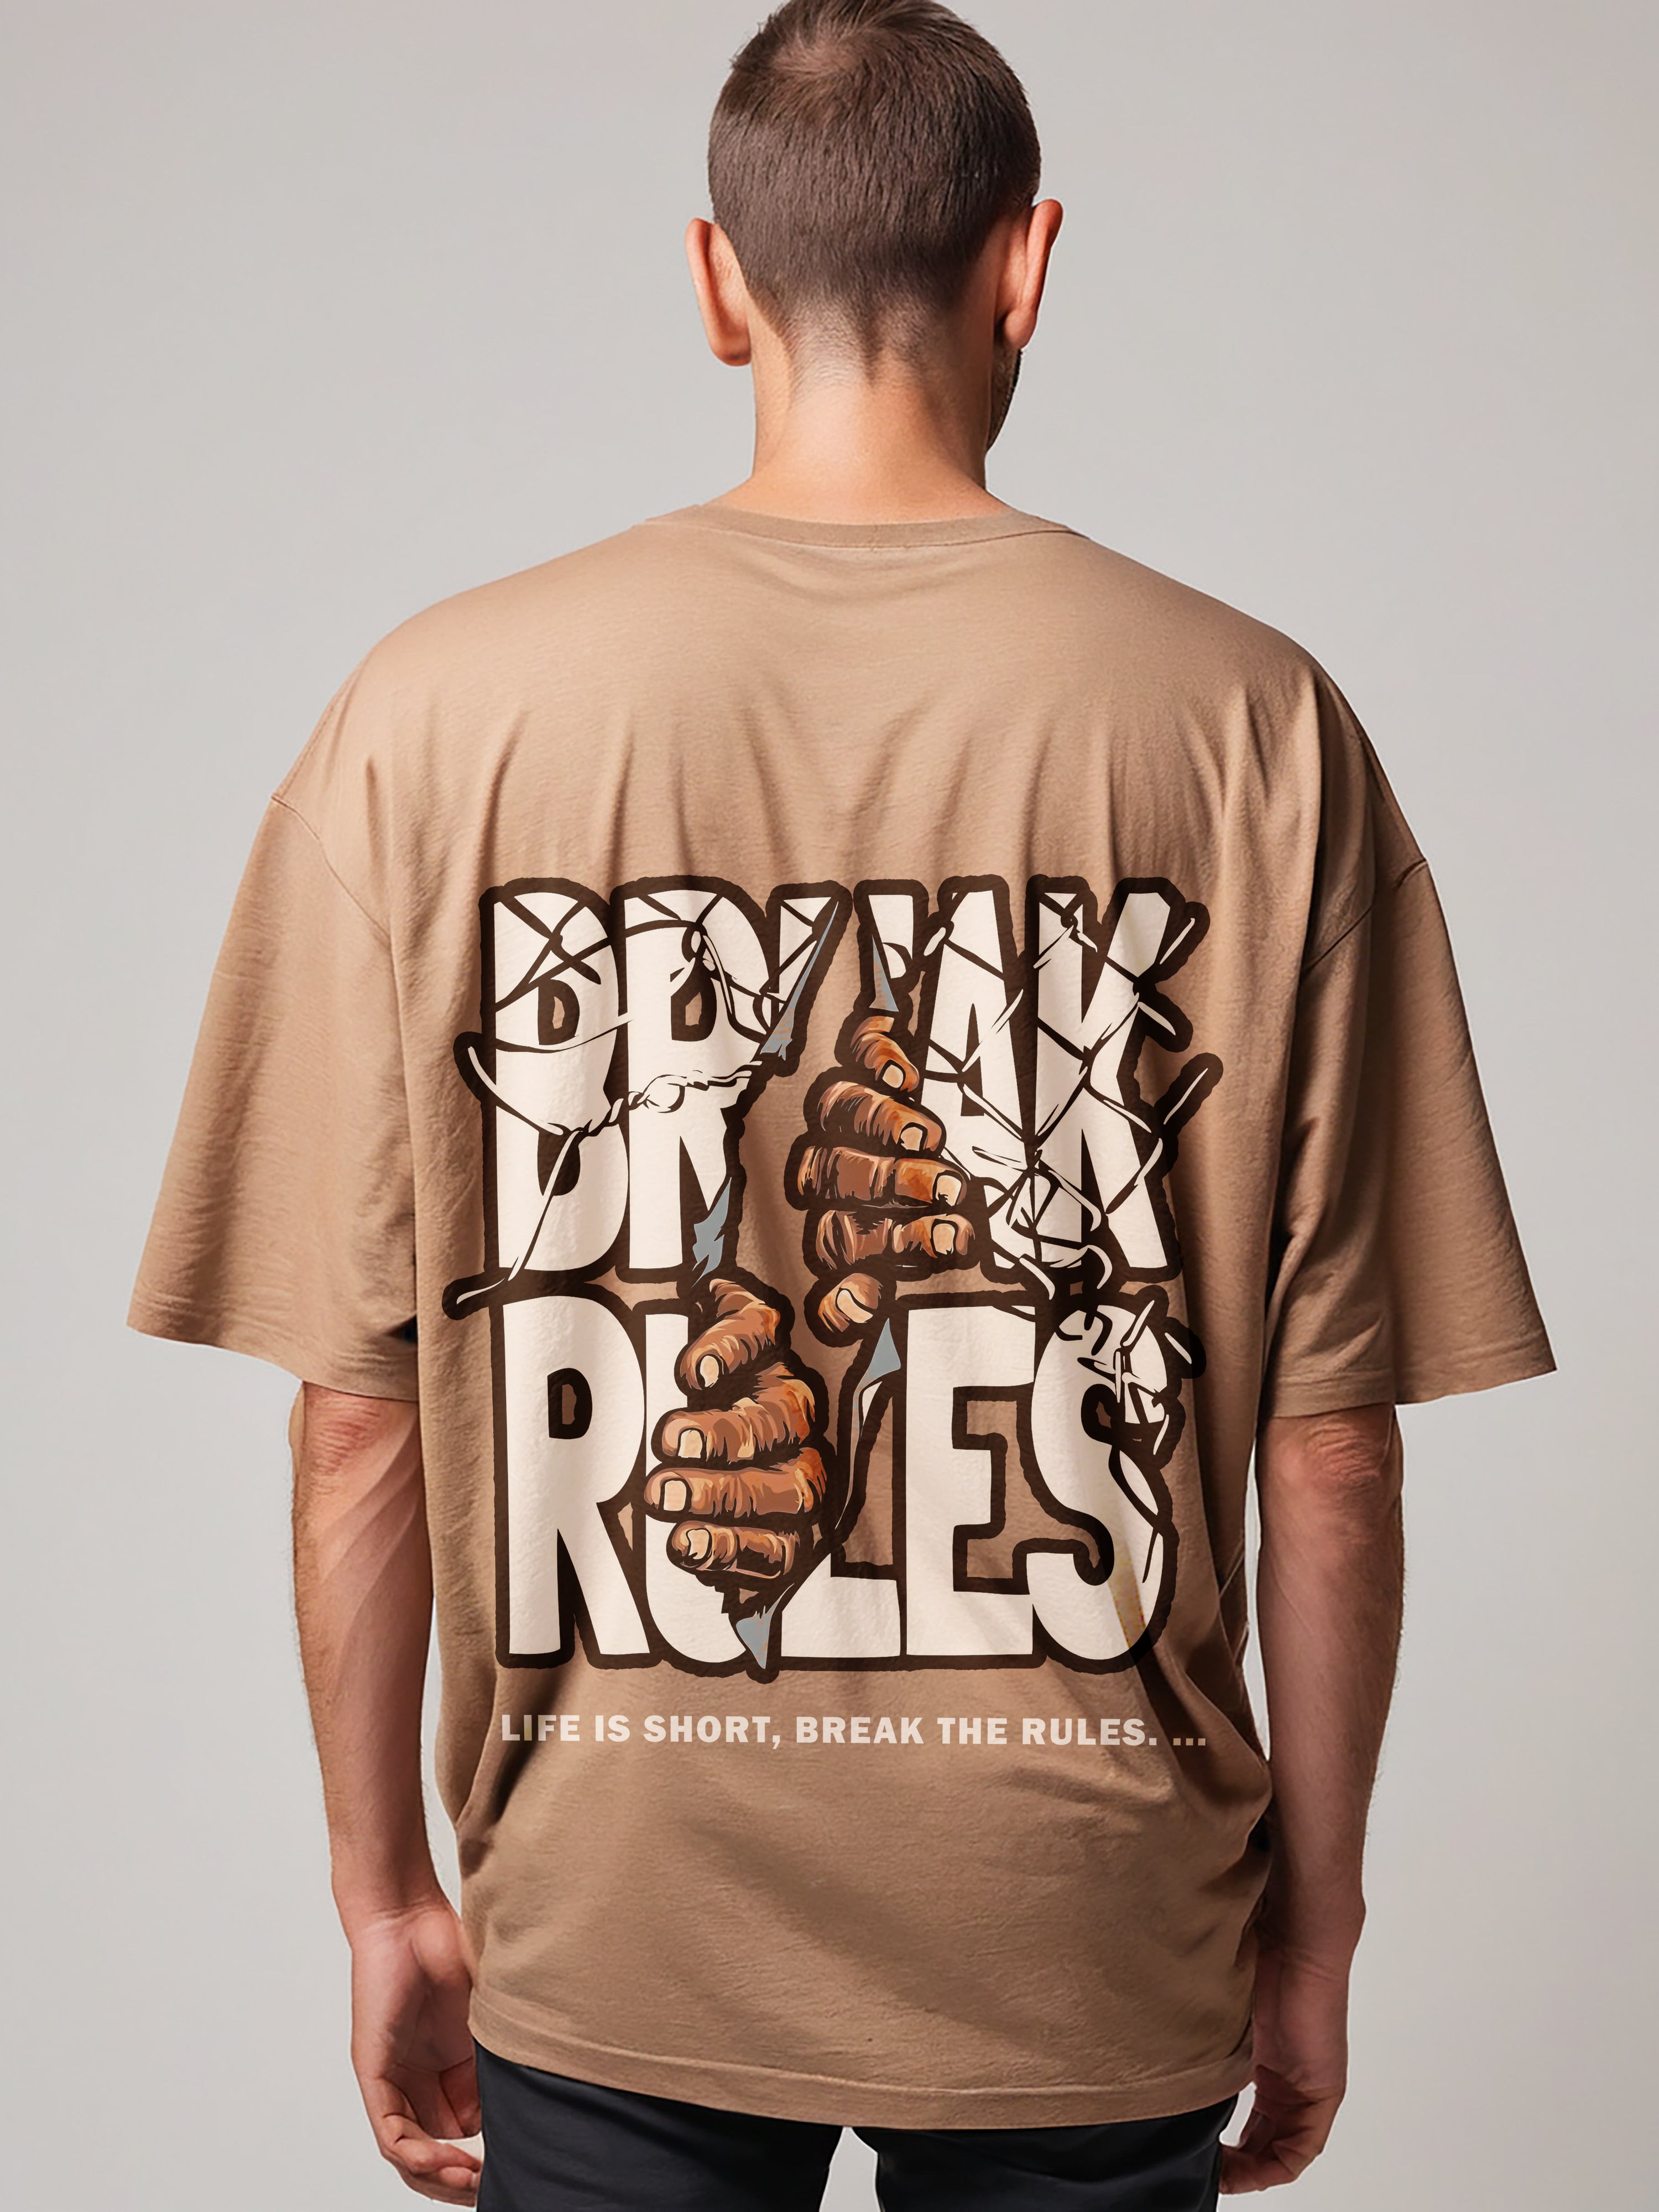 Break Rules oversize T-shirt, back side